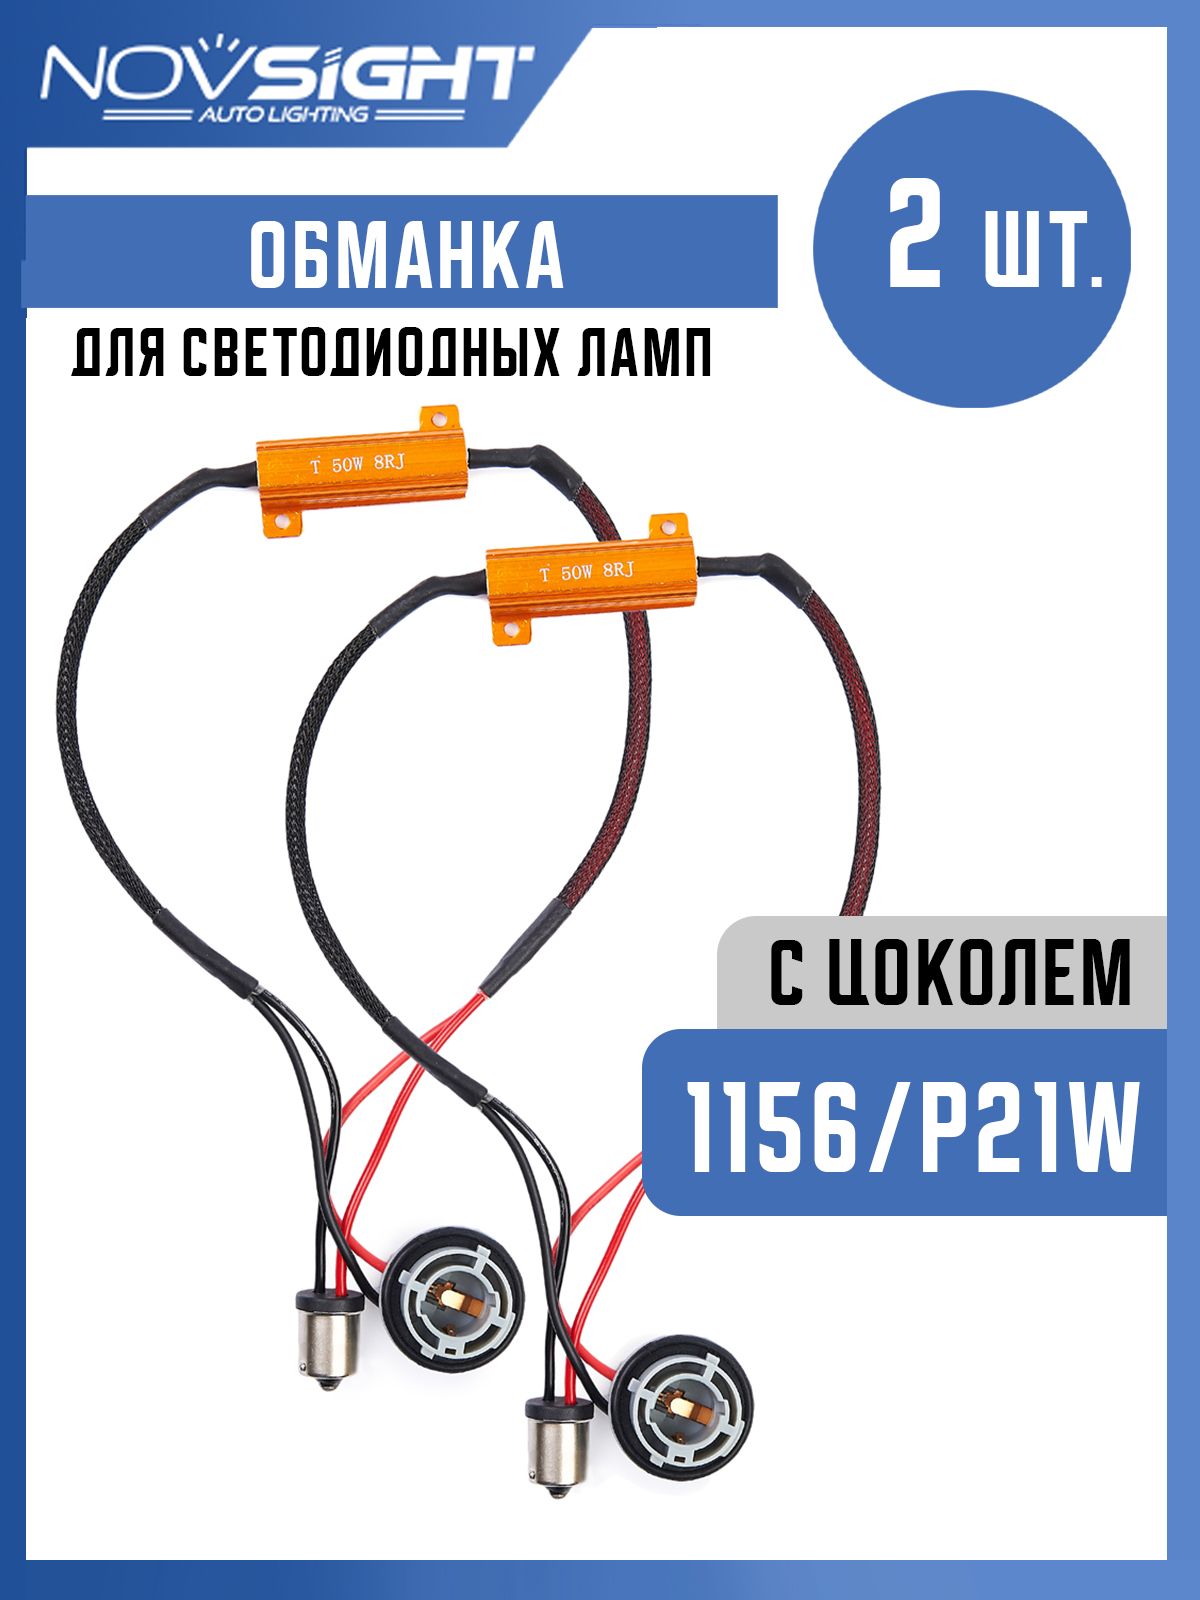 OLX.ua - объявления в Украине - обманка для лед ламп